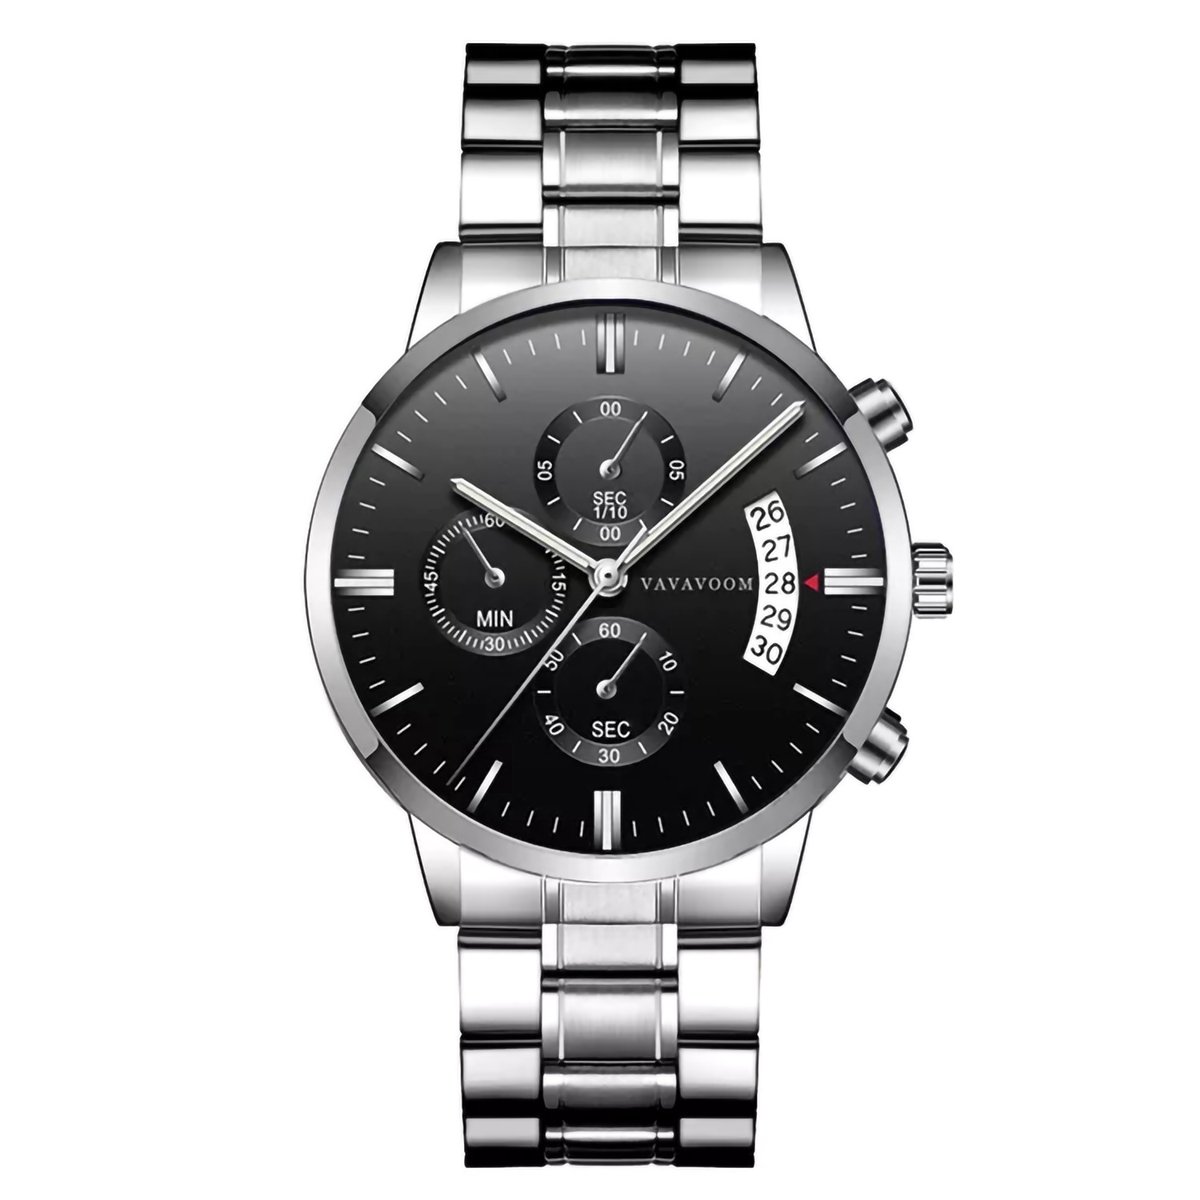 Horloges voor mannen - Horloge mannen – Luxe zilver zwart Design - Heren horloge - Ø 42 mm - Roestvrij Staal - Waterdicht tot 3 bar - Chronograaf - Geschenkset met verstelbare pin